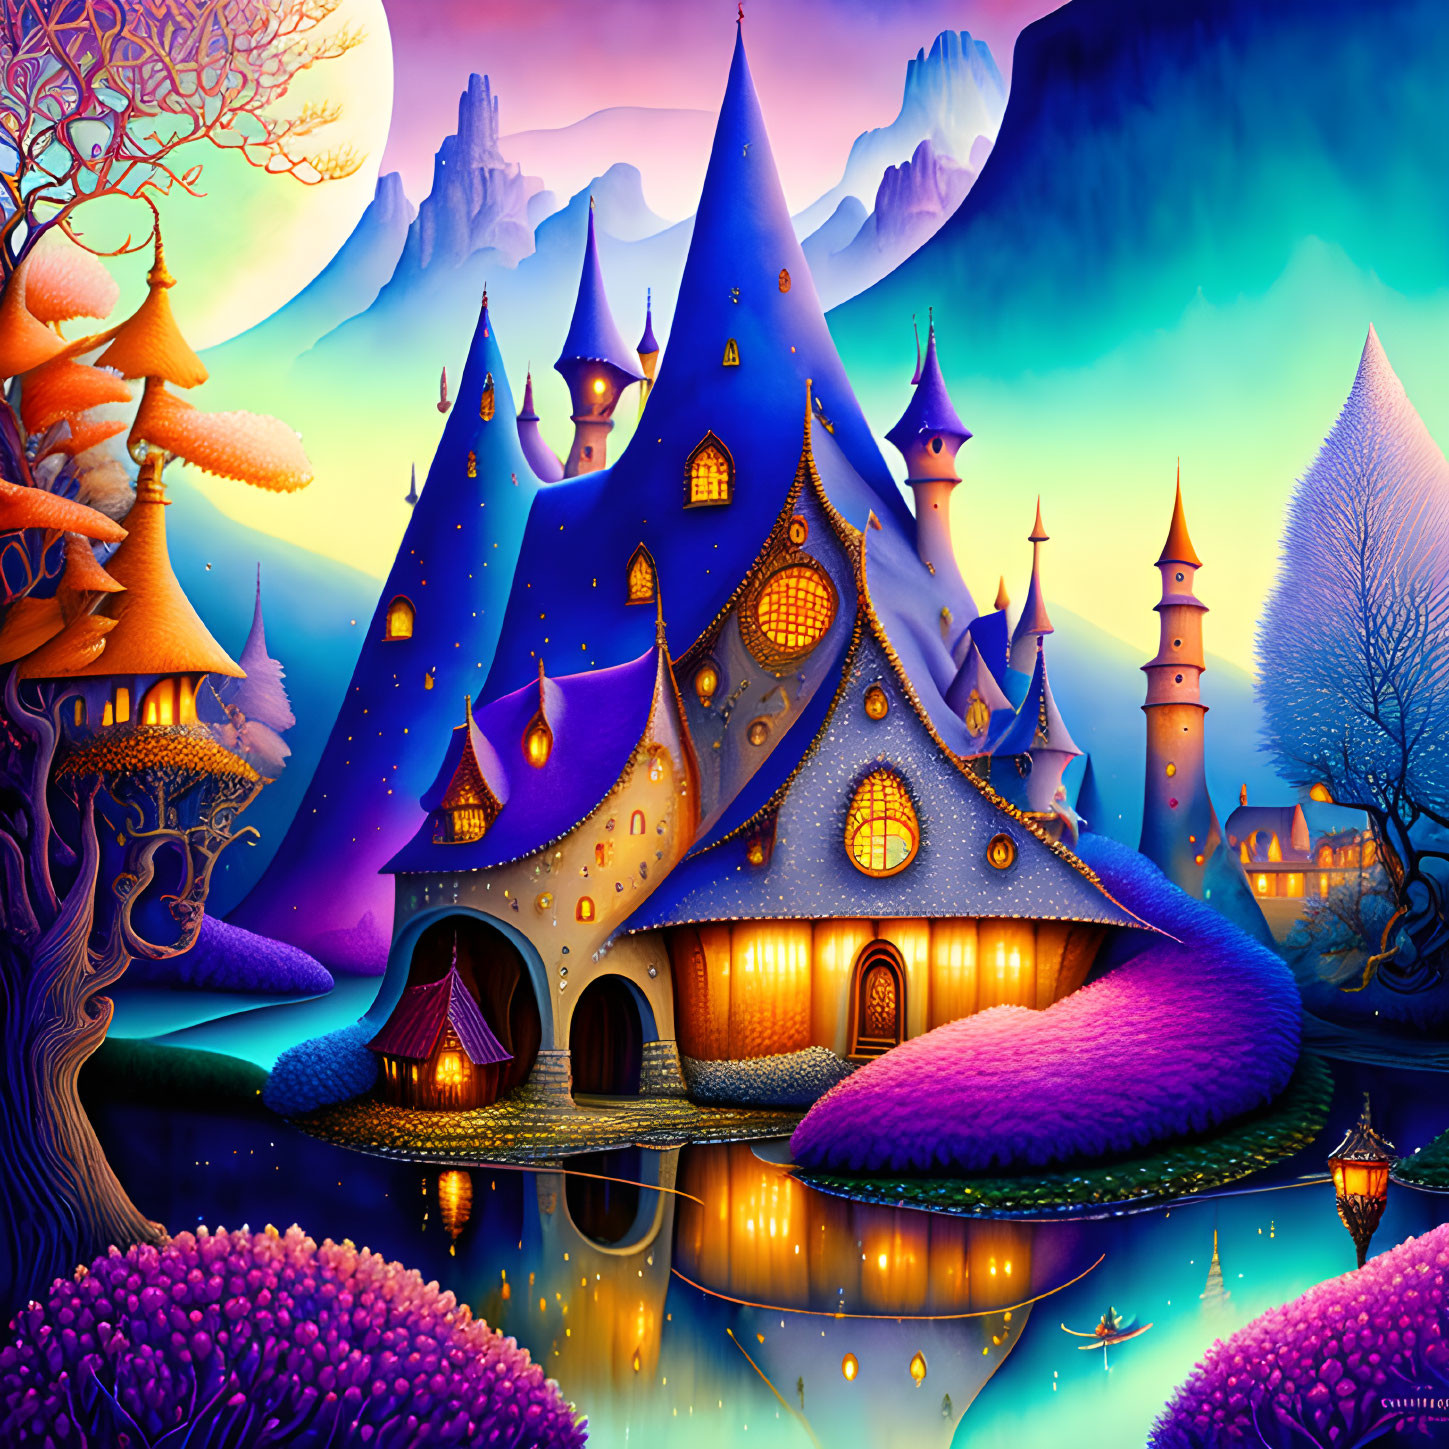 Magic Village